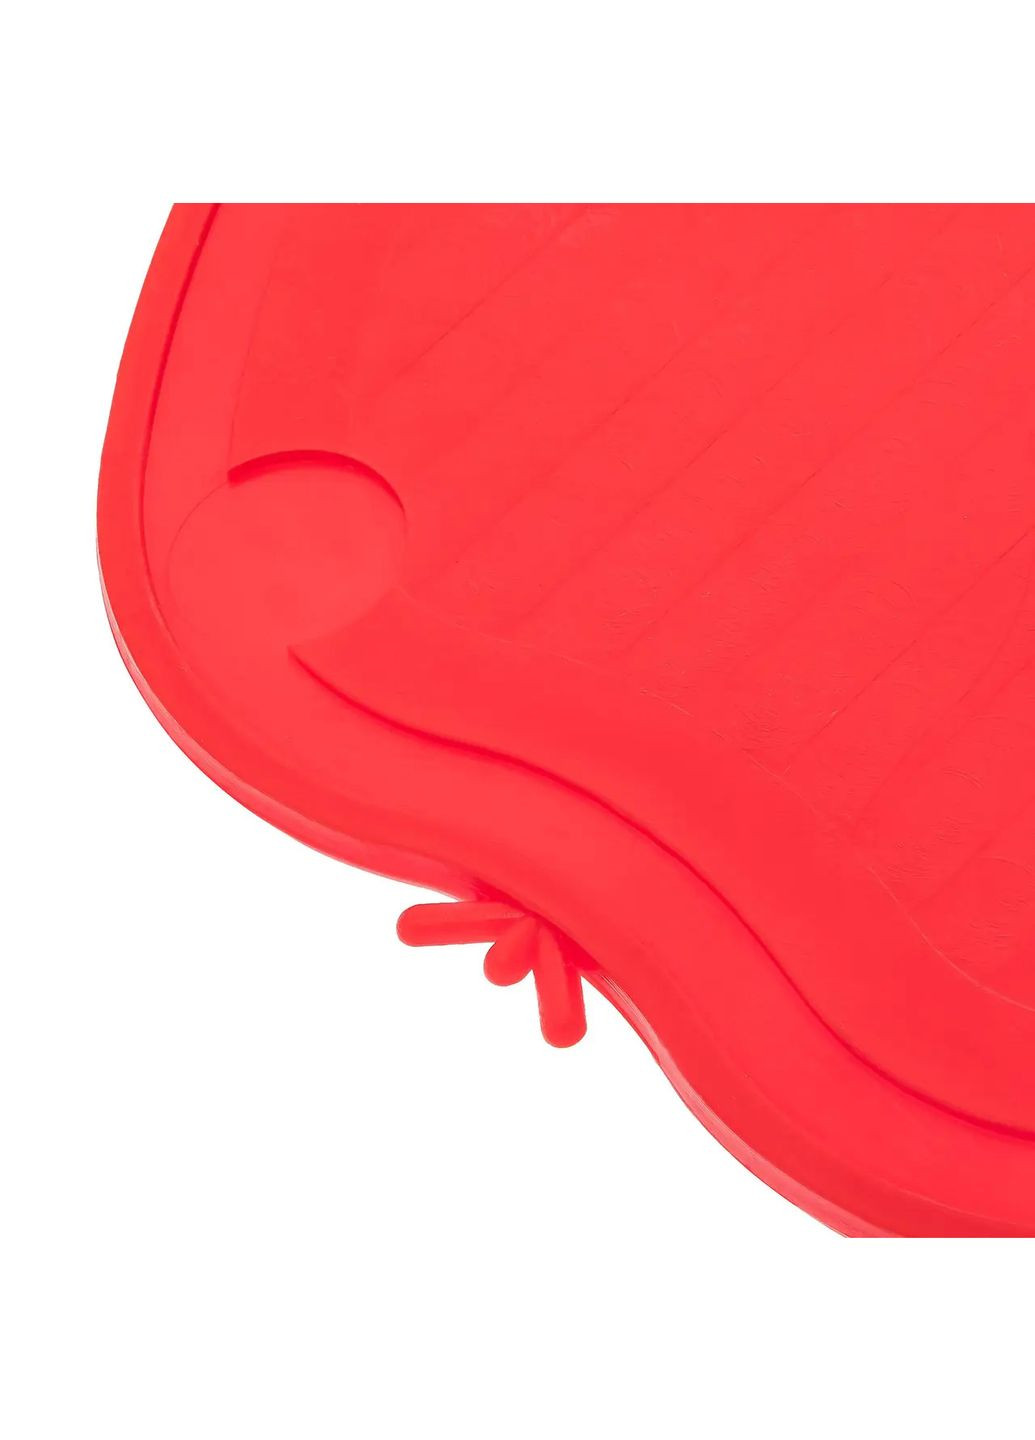 Доска разделочная пластиковая для нарезки мяса, рыбы, овощей и фруктов в форме яблока (220х210 мм) Красный Kitchette (263346517)